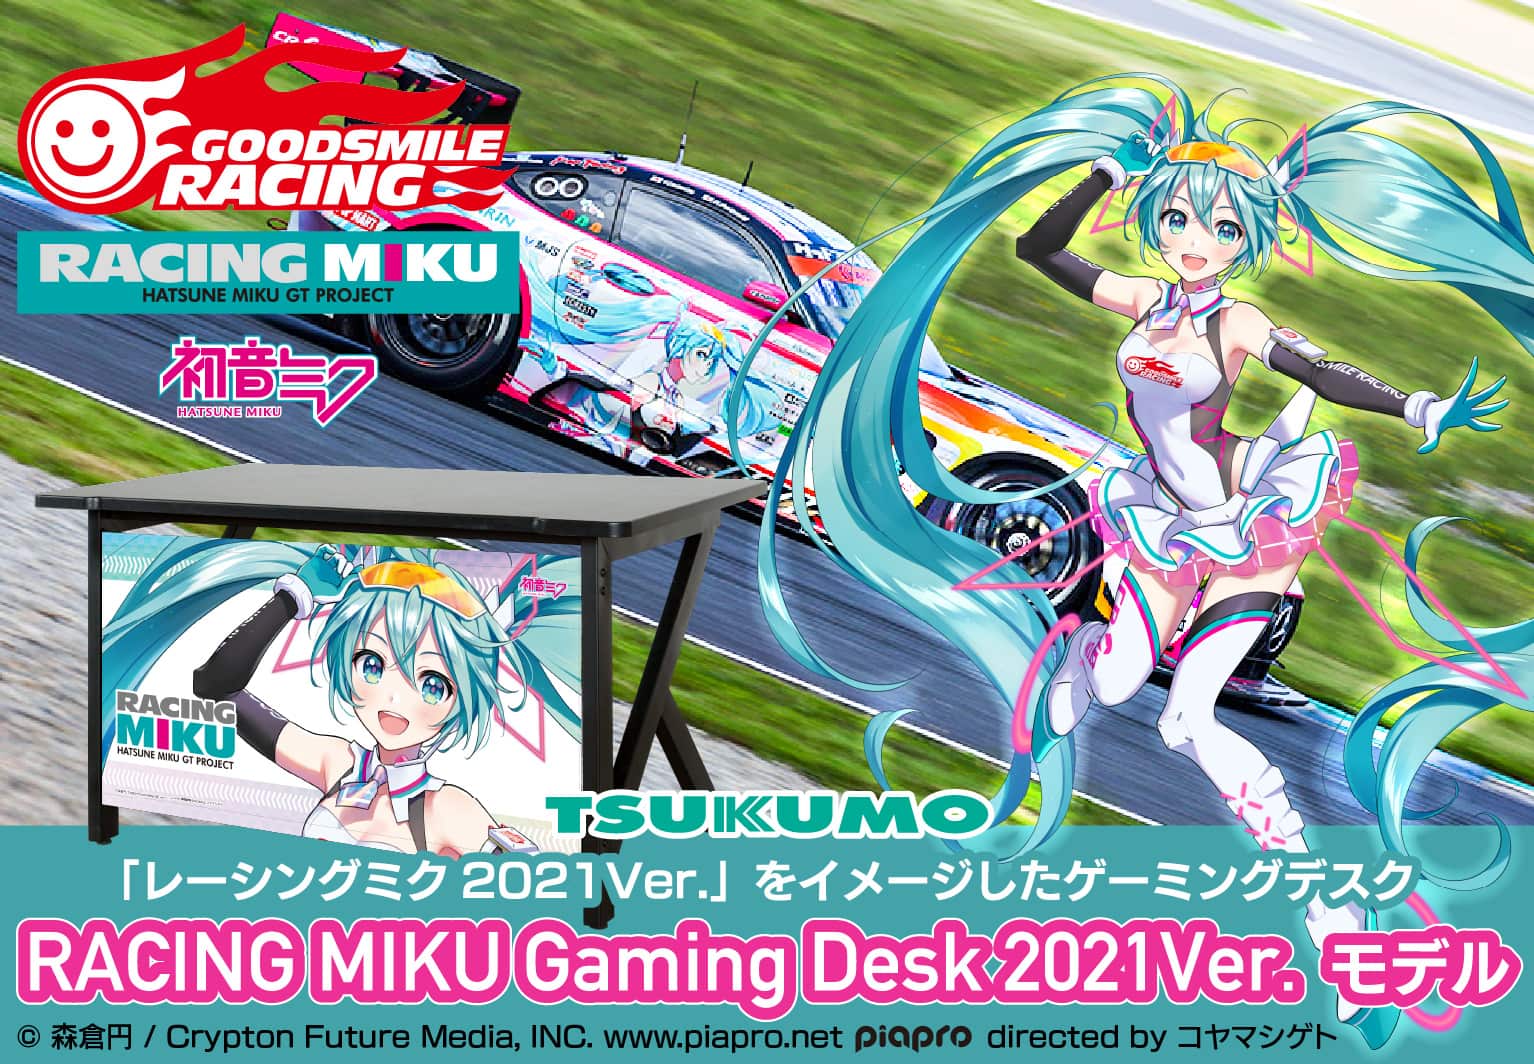 RACING MIKU Gaming Desk 2021Ver.モデル